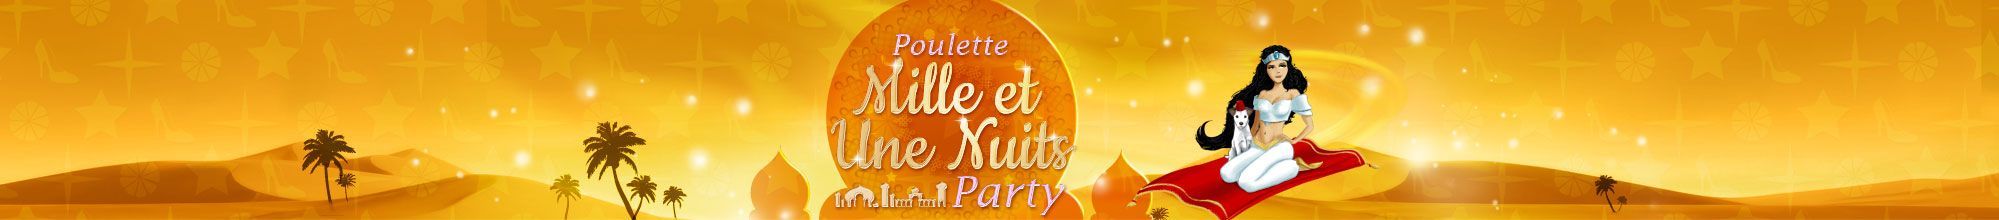 Poulette 1001 Nuits Party